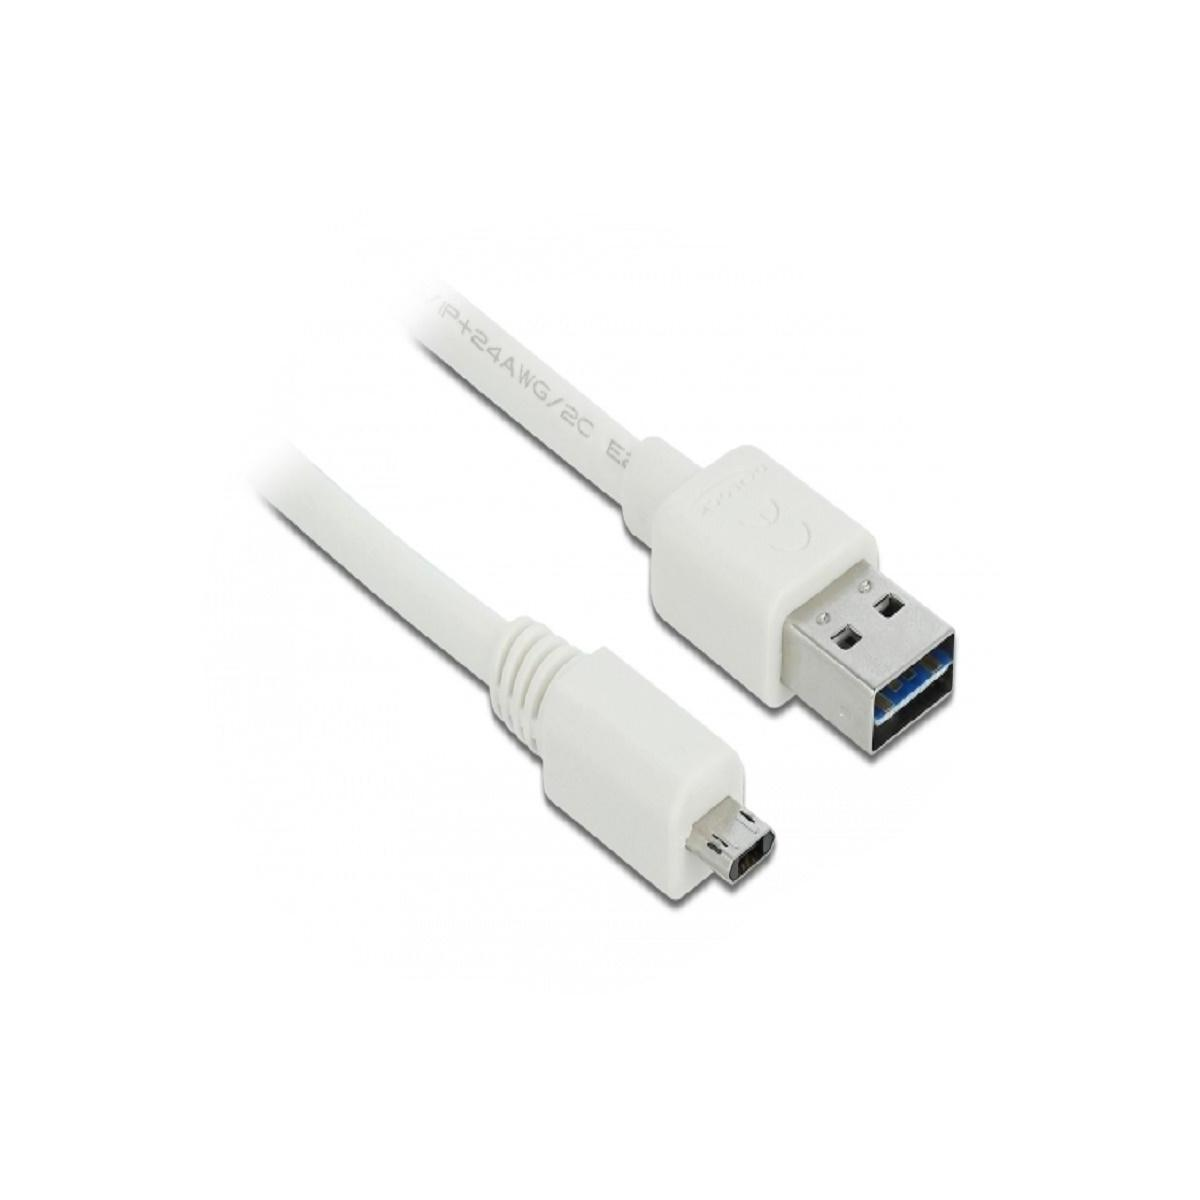 DELOCK 84806 USB Kabel, Weiß